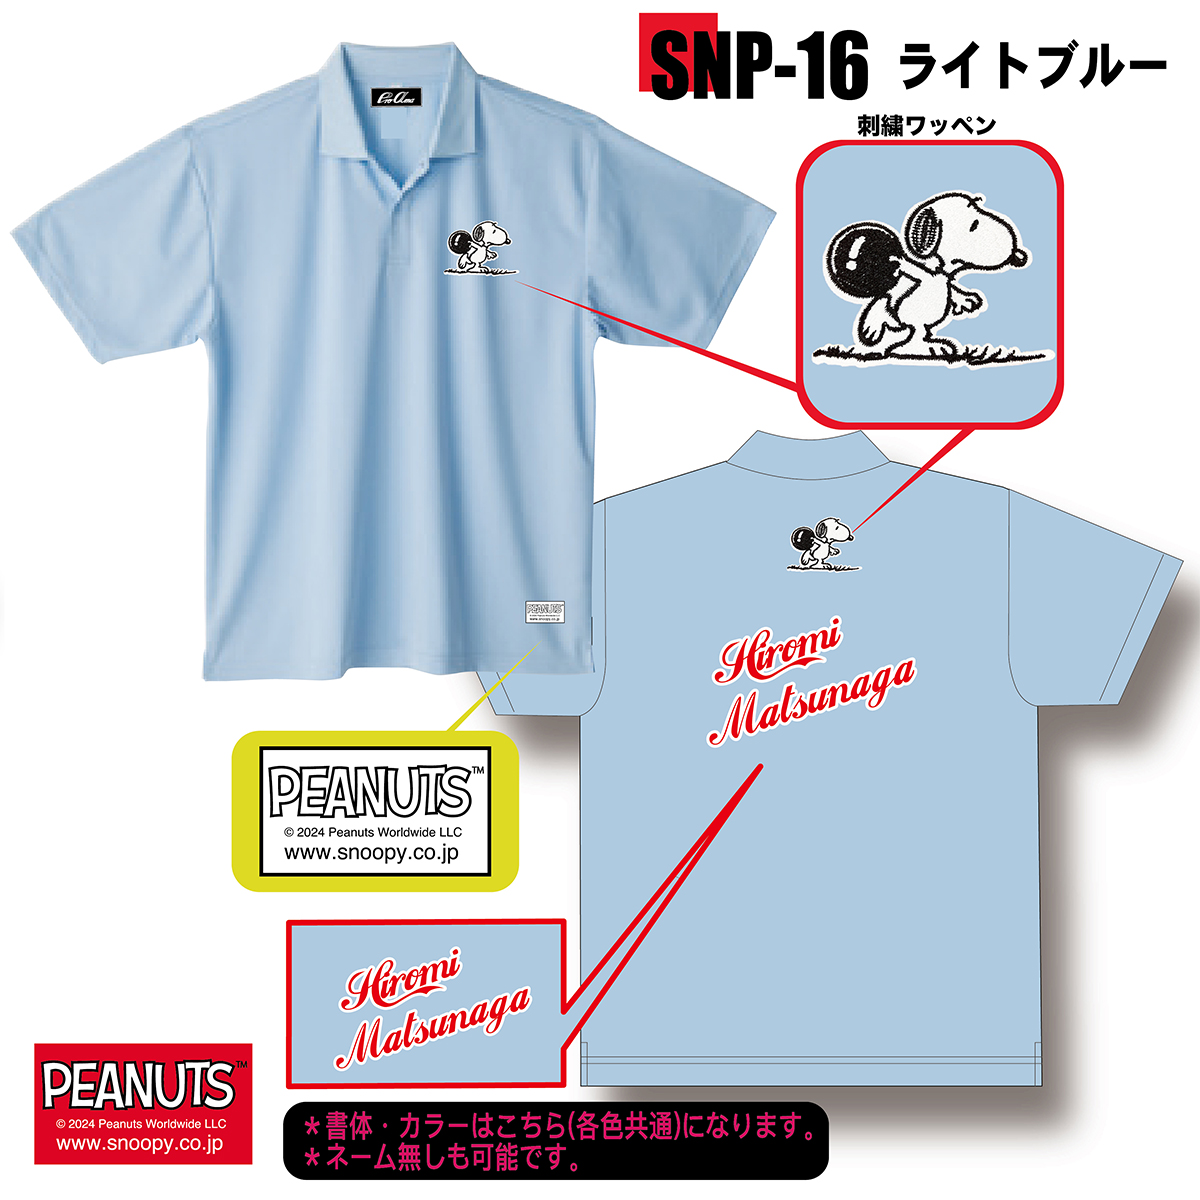 スヌーピー刺繍ワッペンモデル(SNP-16)(受注生産)